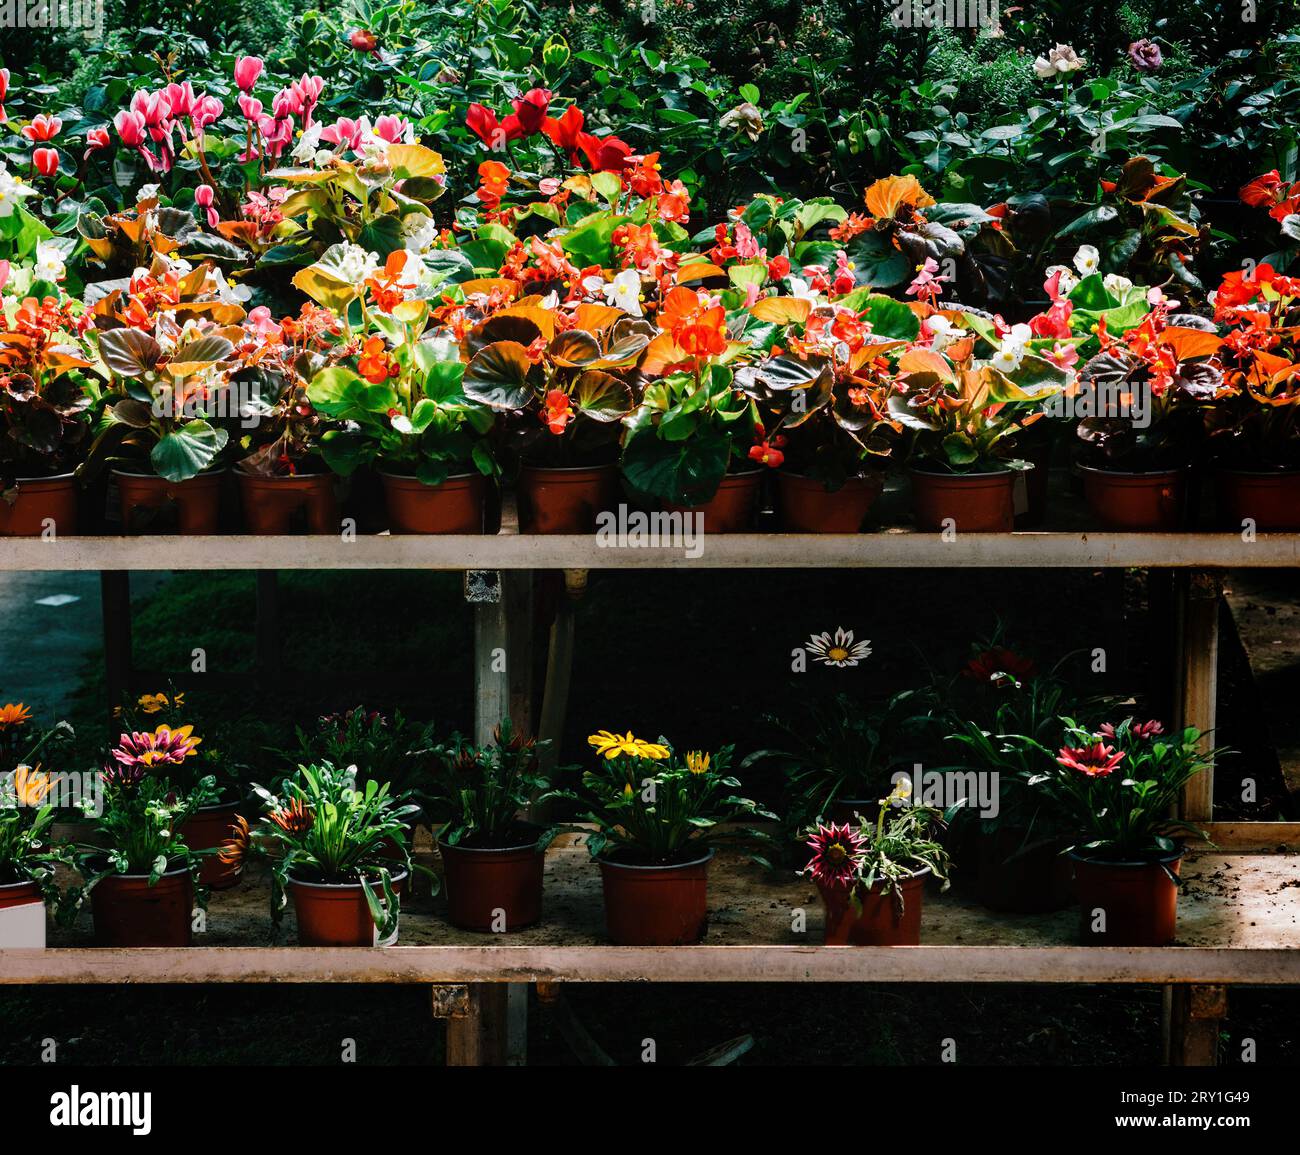 Wunderschöne frische blühende Blumen im Blumenladen: Pfingstrosen, Dahlien, Rosen, Hortensien auf dem Regal im Blumenkühlschrank Stockfoto